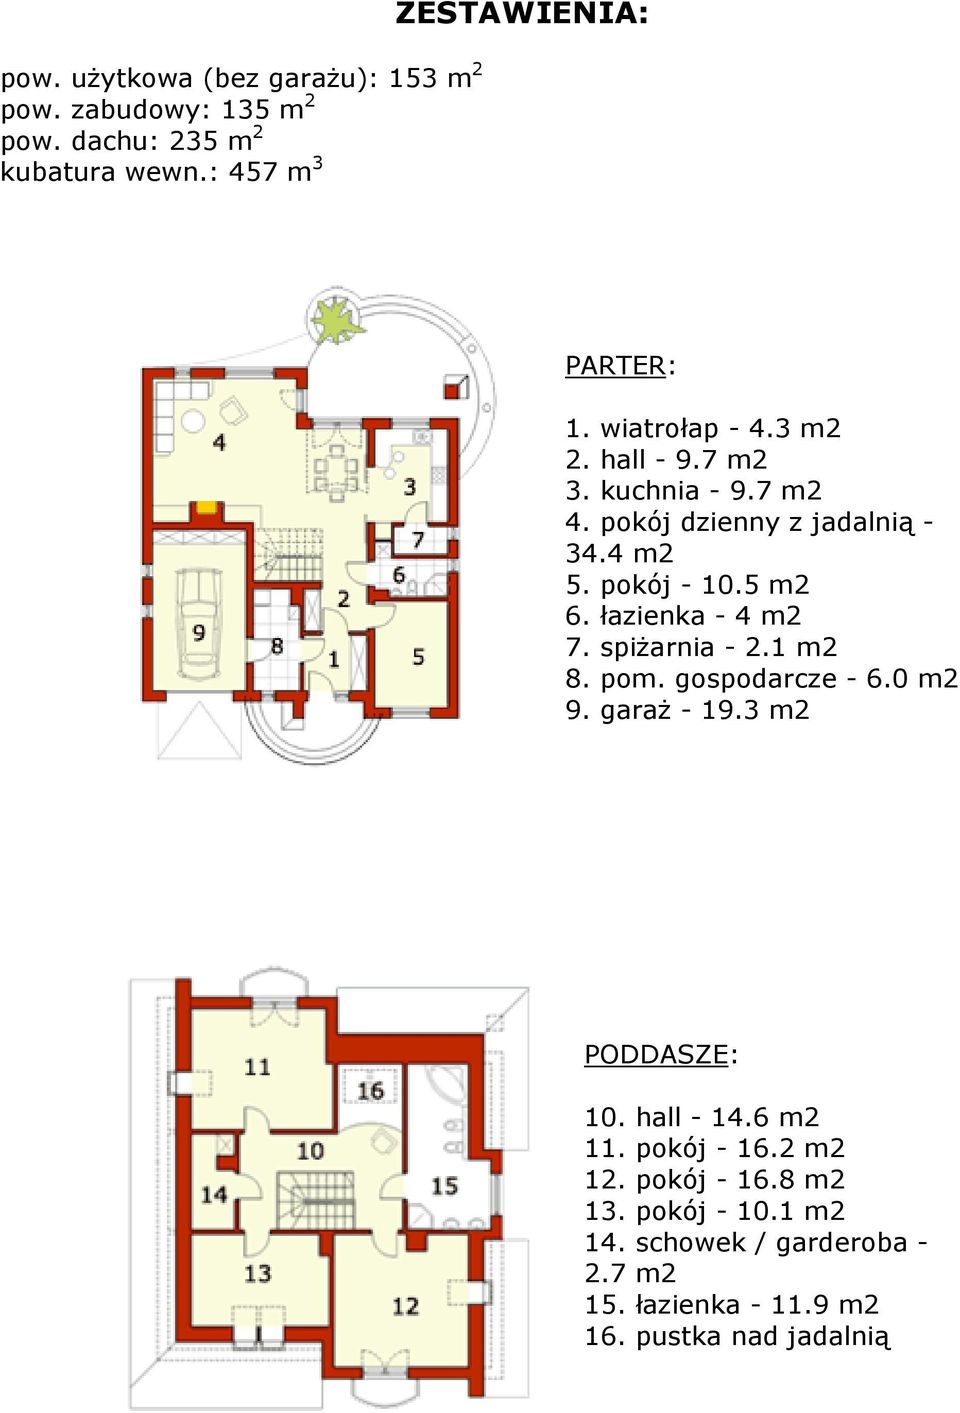 4 m2 5. pokój - 10.5 m2 6. łazienka - 4 m2 7. spiŝarnia - 2.1 m2 8. pom. gospodarcze - 6.0 m2 9. garaŝ - 19.